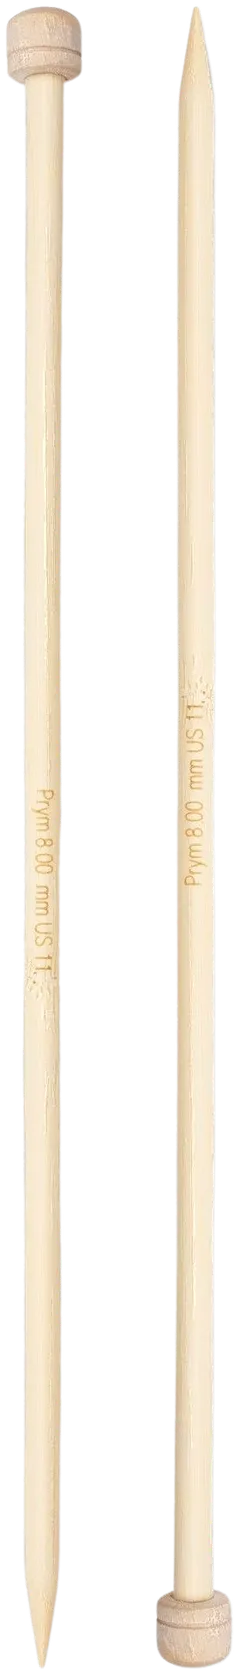 Prym neulepuikko 8,0 33cm bambu - 2